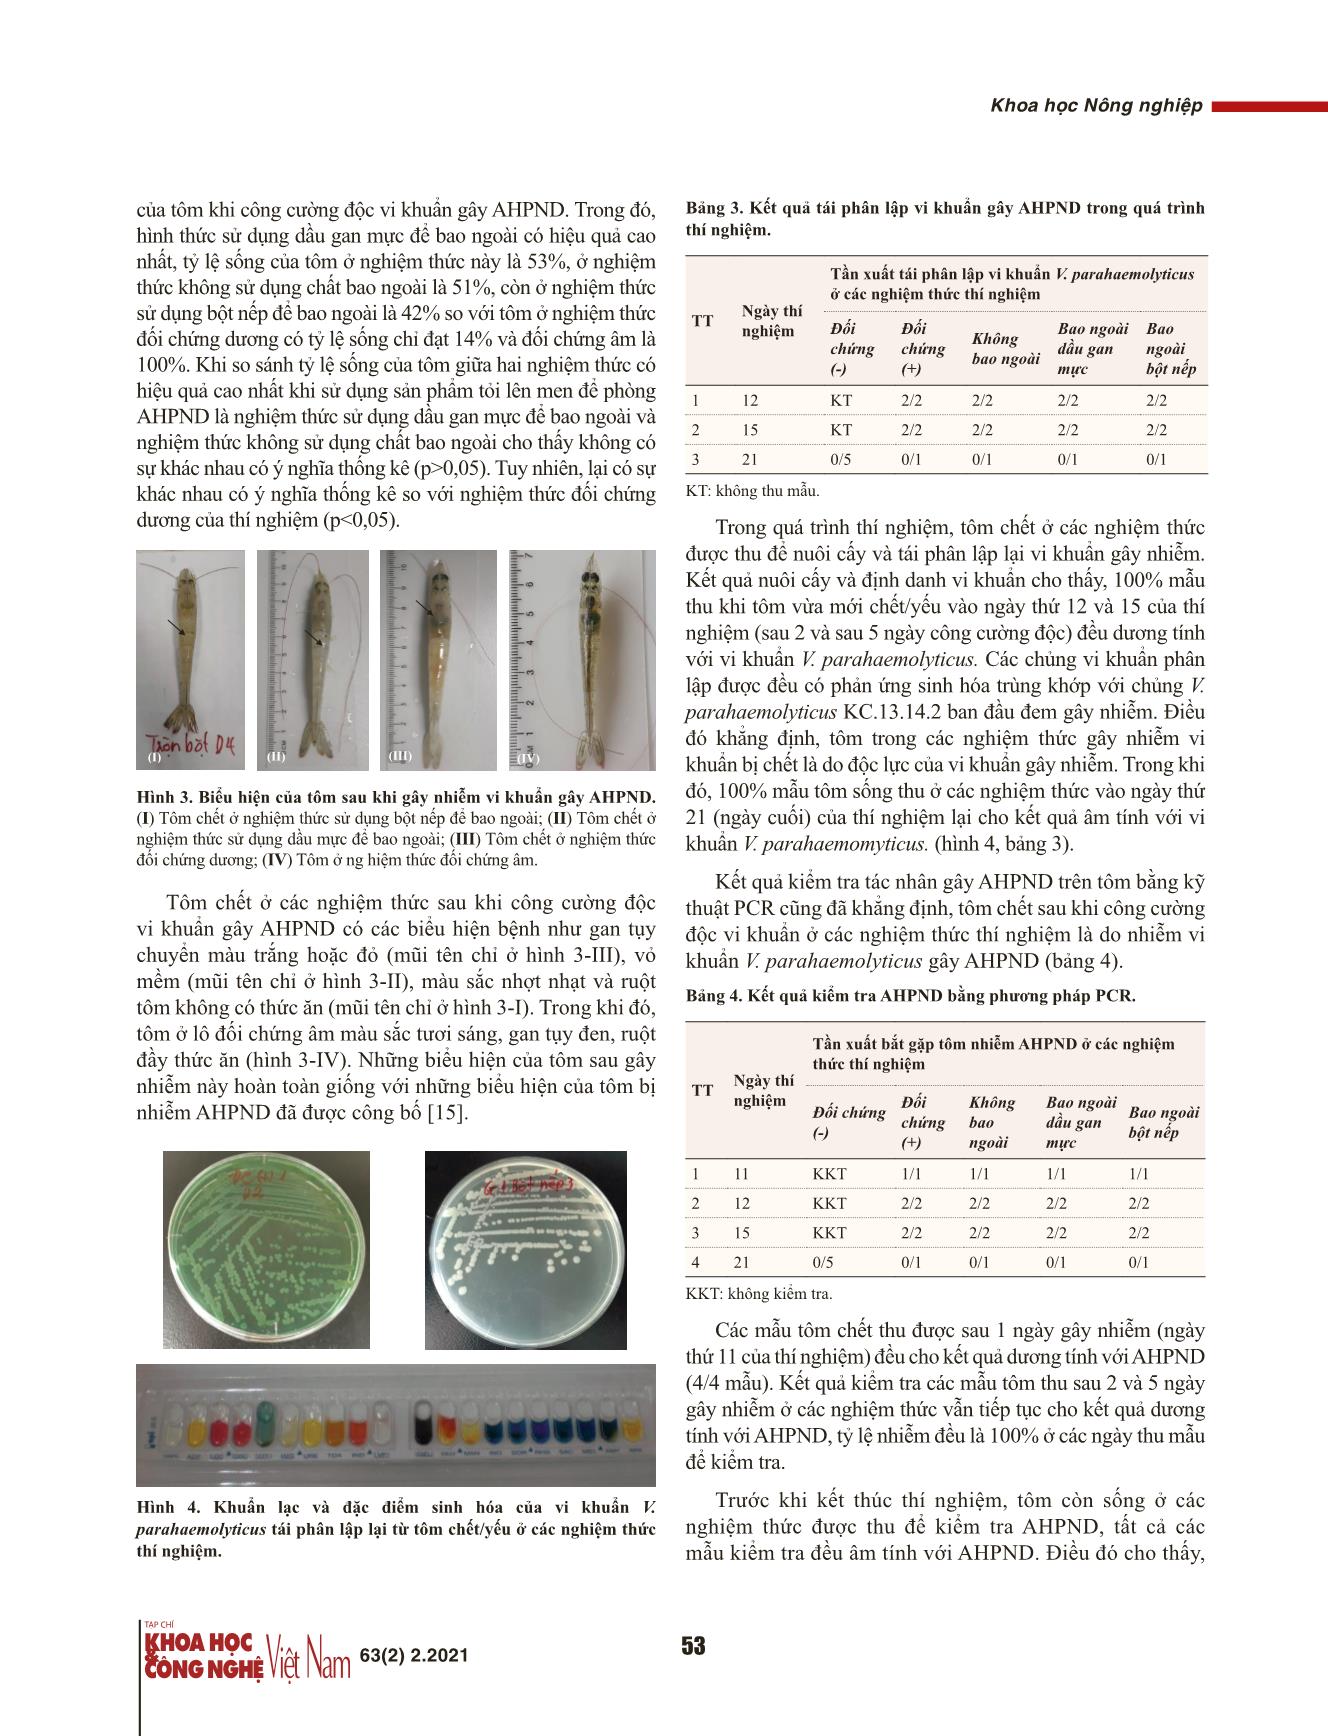 Khả năng kháng khuẩn và phòng bệnh hoại tử gan tụy cấp ở tôm thẻ chân trắng (Penaeus vannamei) của tỏi (Allum sativum) lên men trang 5